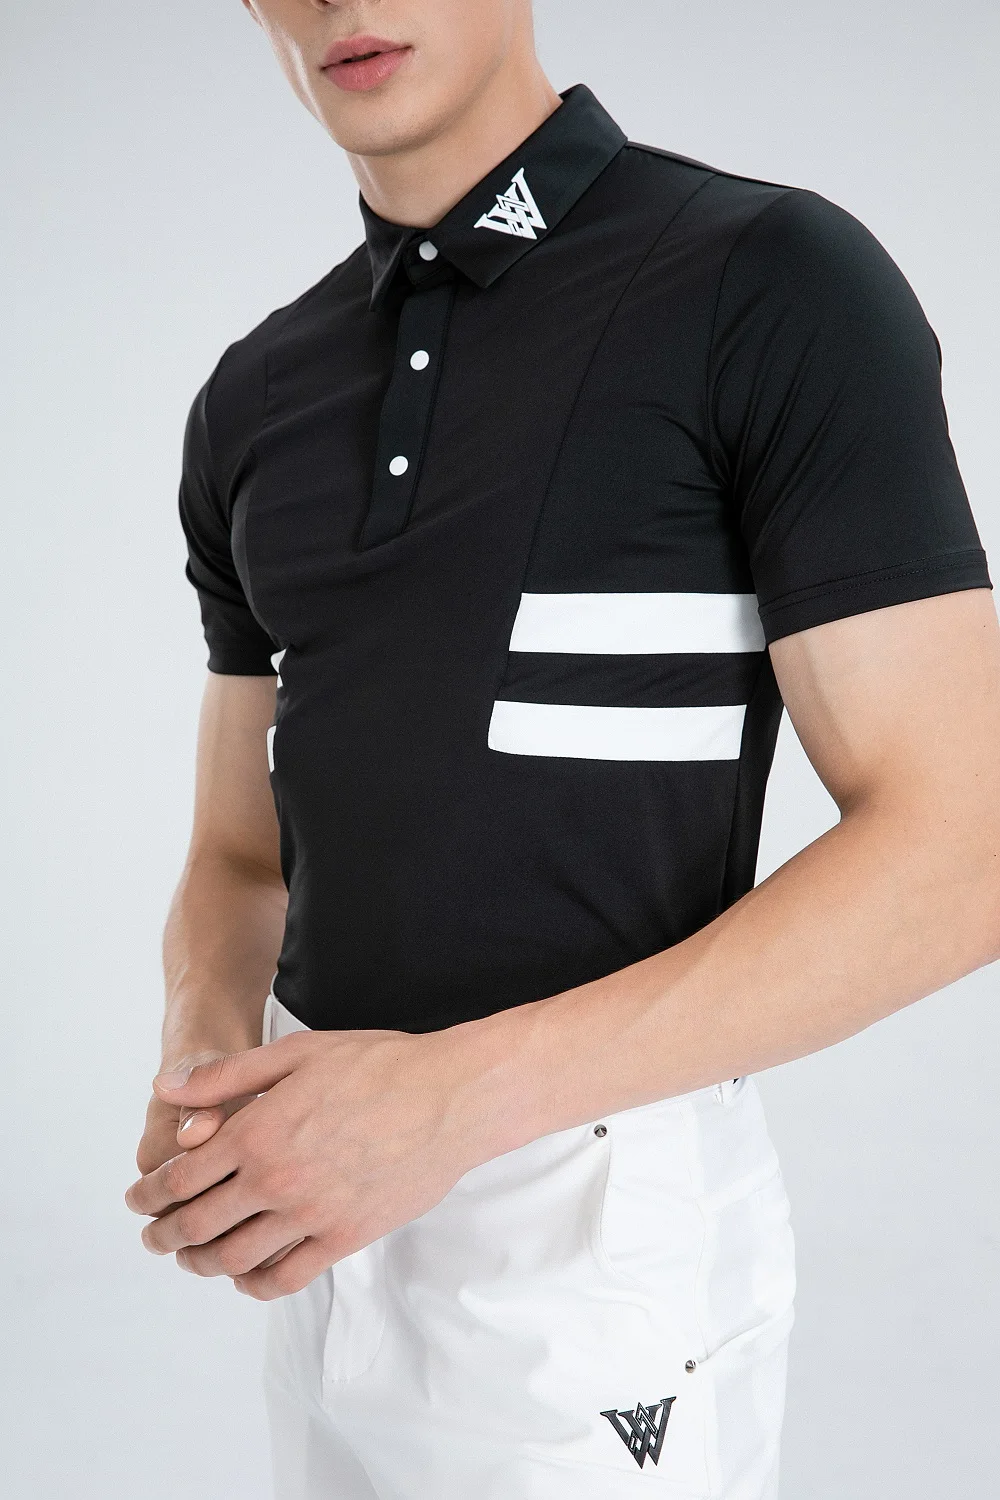 2023 новая спортивная одежда для гольфа, мужская футболка для гольфа, удобная, дышащая, быстросохнущая футболка для гольфа с коротким рукавом . ' - ' . 4